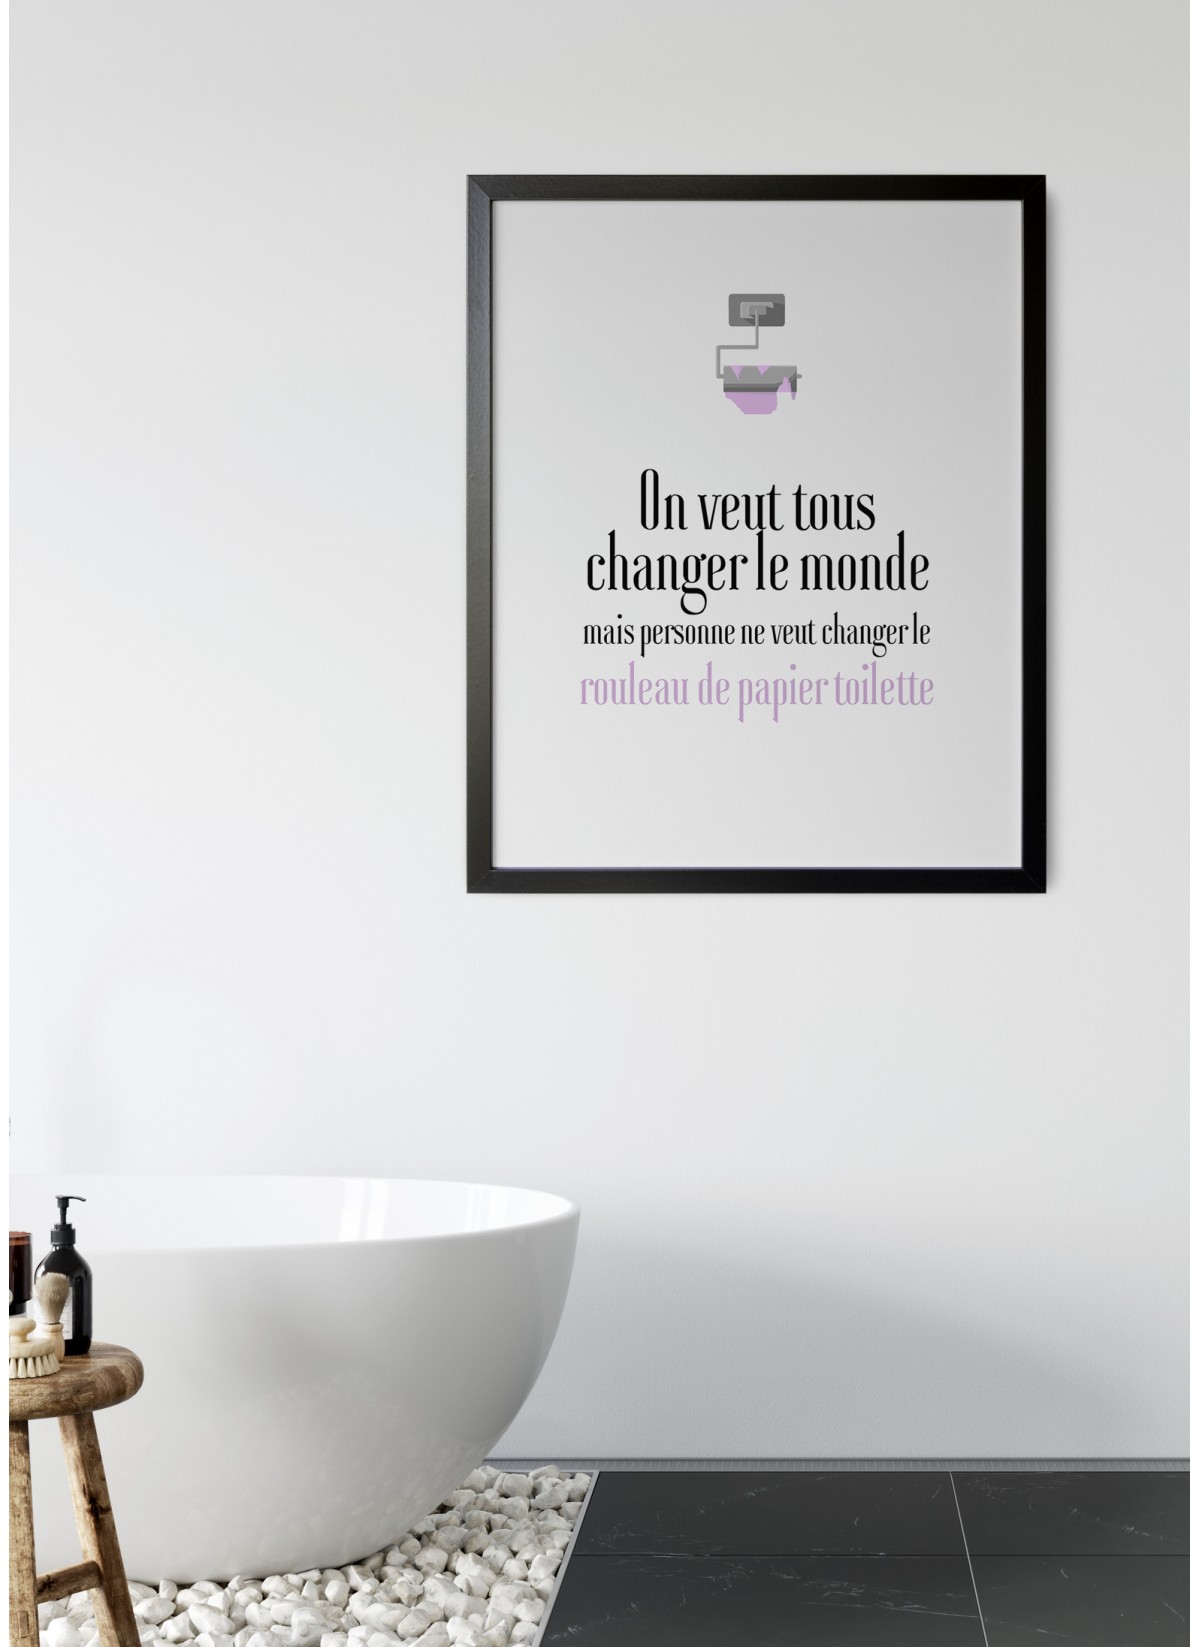 Affiche personnalisée règle des toilettes WC, idée de cadeau